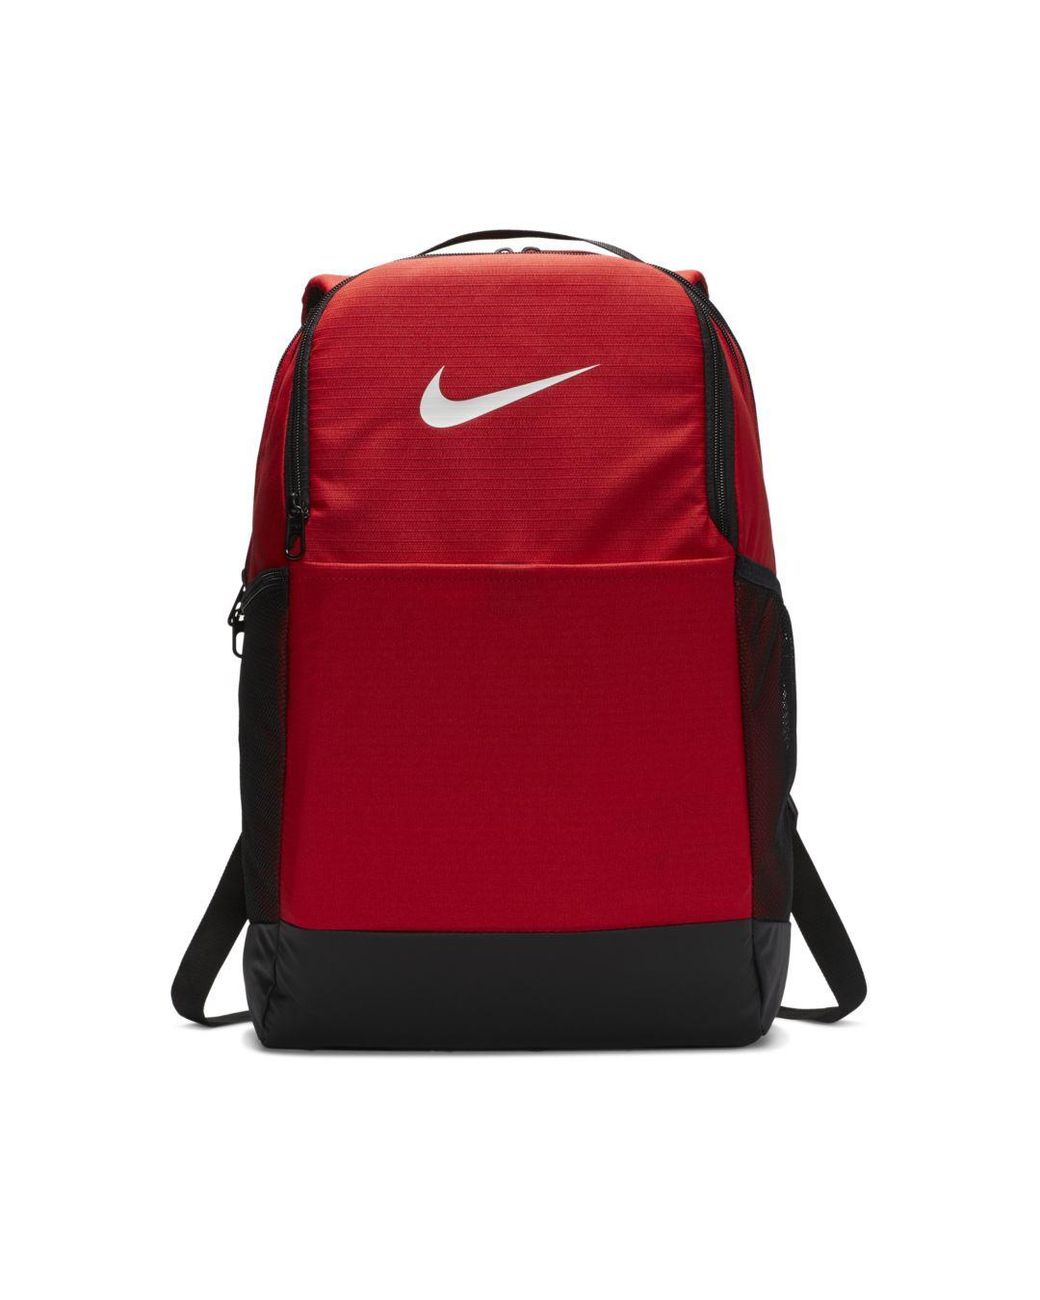 Nike Brasilia Training Backpack (medium) in Red for Men - Lyst